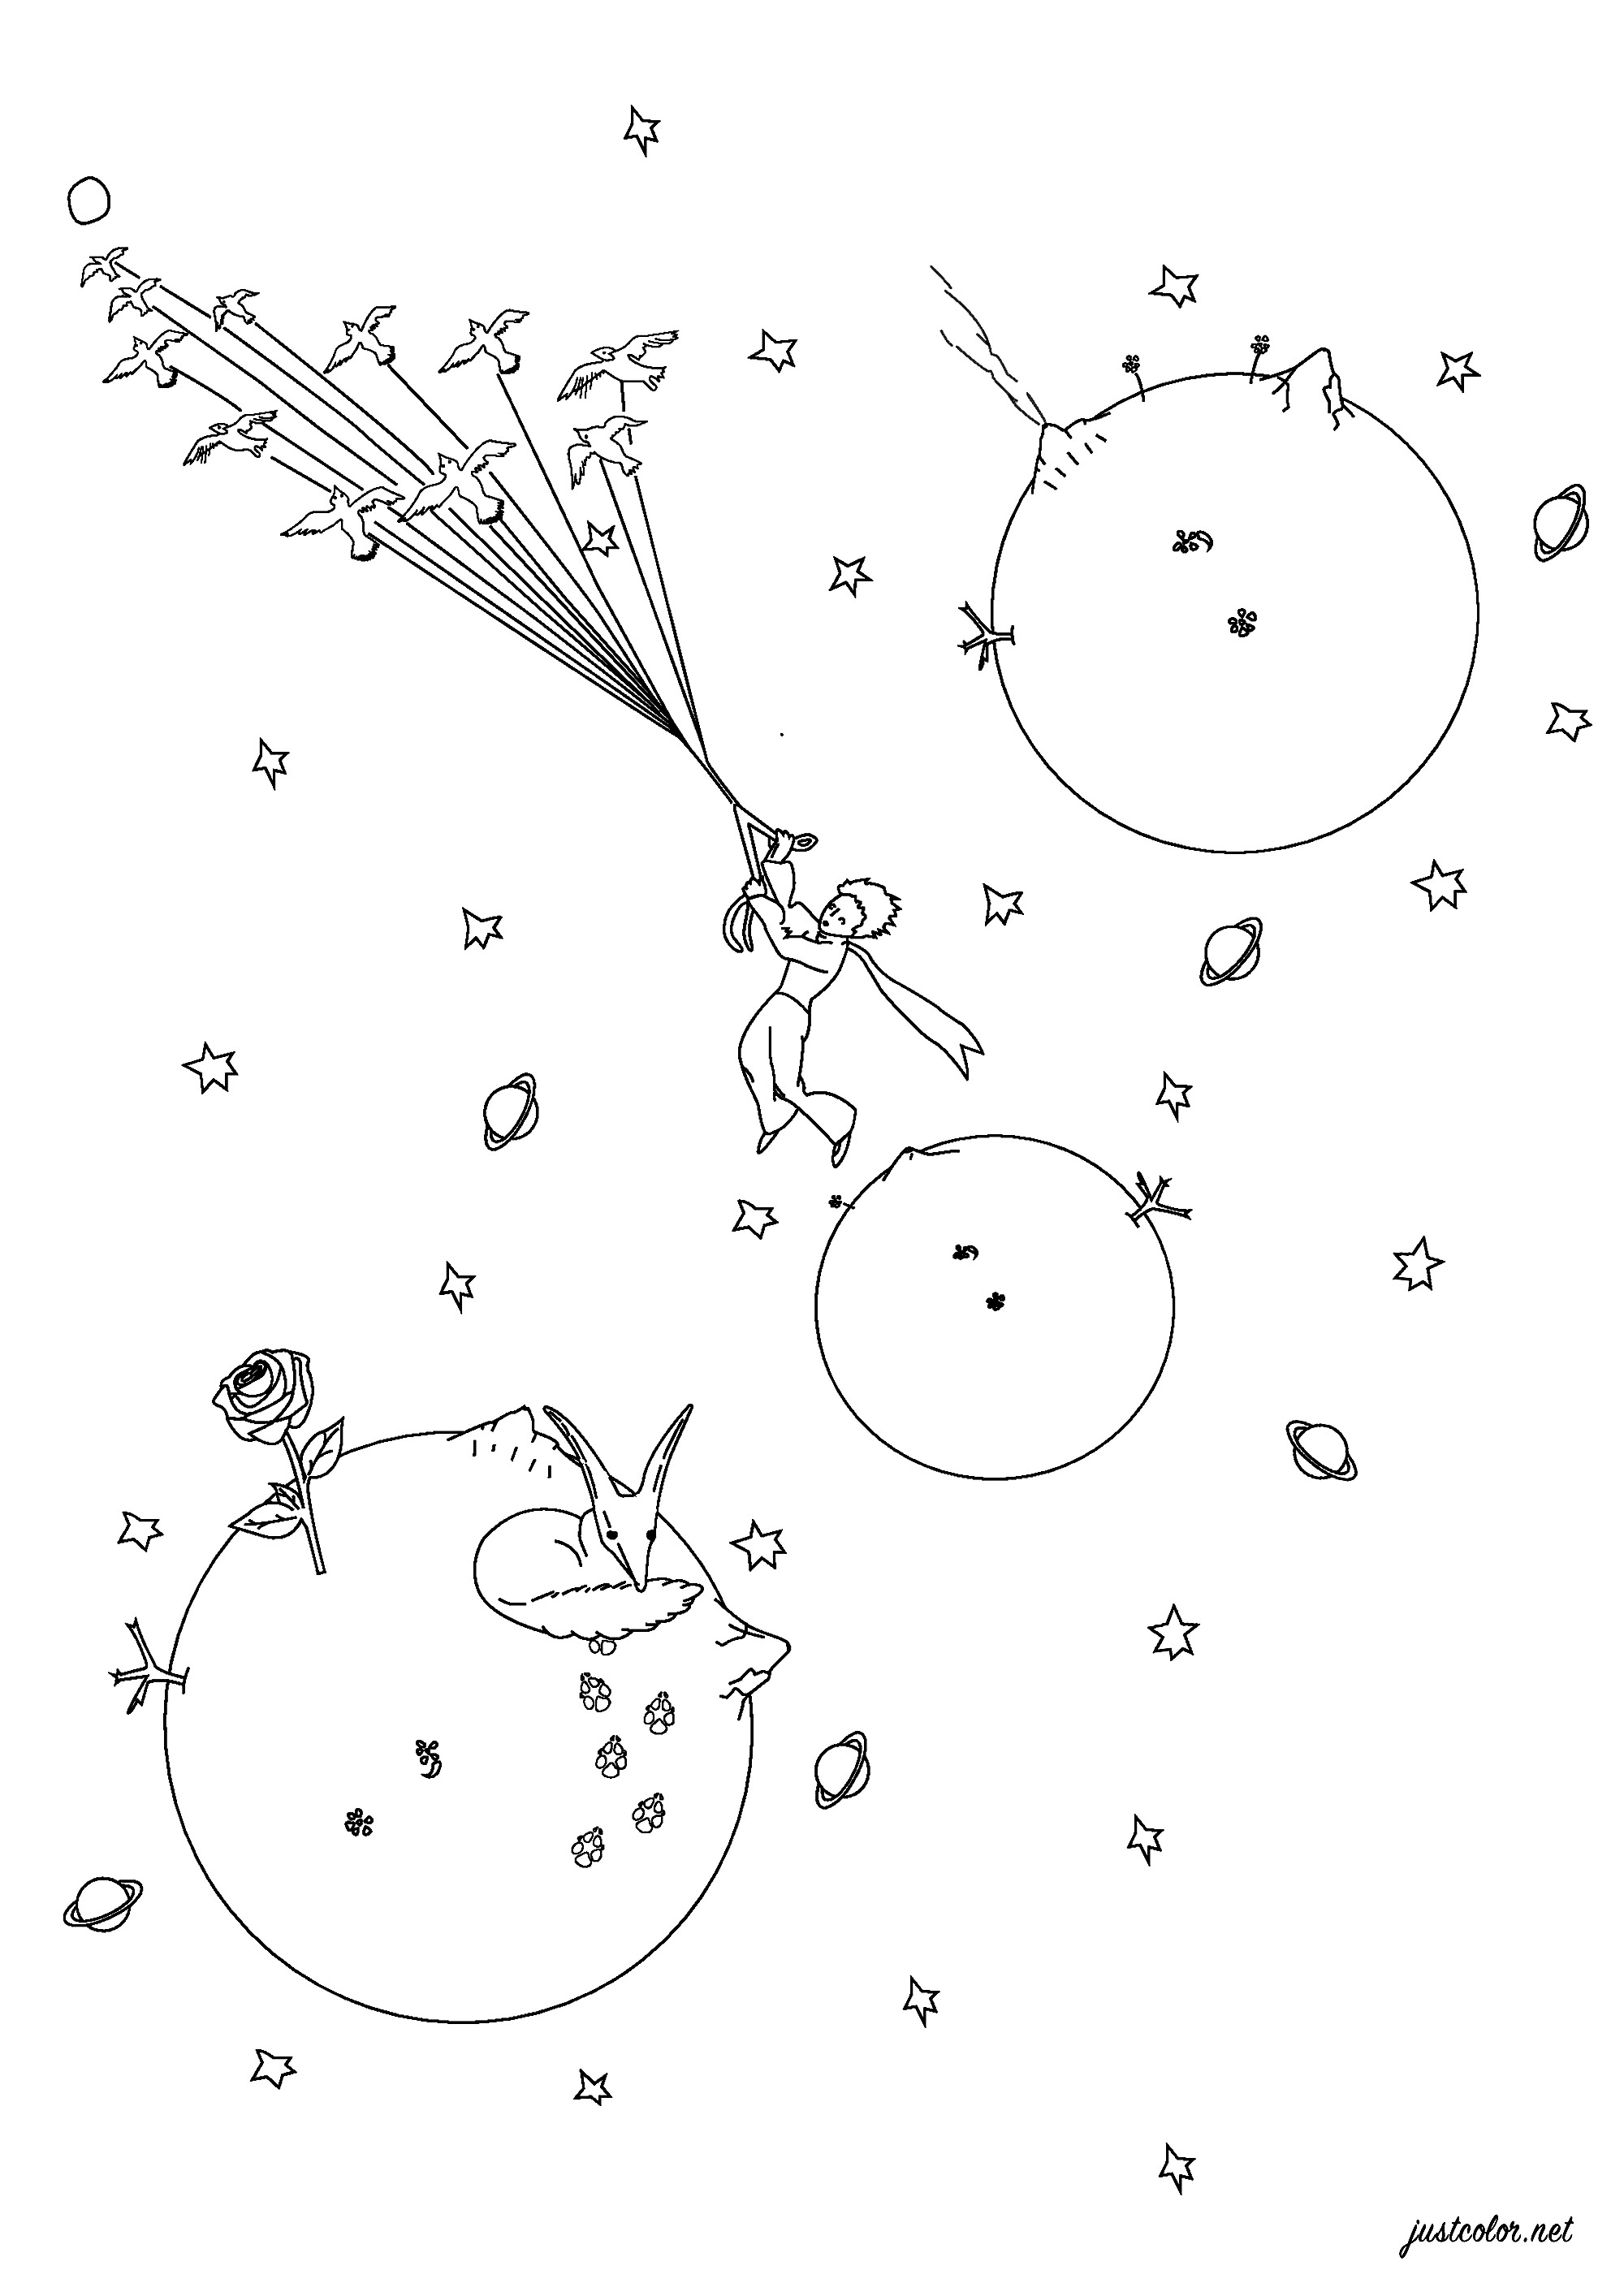 Malvorlage inspiriert von Der kleine Prinz von Antoine de Saint-Exupéry. Der kleine Prinz wurde erstmals 1943 veröffentlicht und ist eine poetische Geschichte mit Aquarellillustrationen des Autors, in der ein in der Wüste gestrandeter Pilot auf einen jungen Prinzen trifft, der von einem winzigen Asteroiden zur Erde kommt.